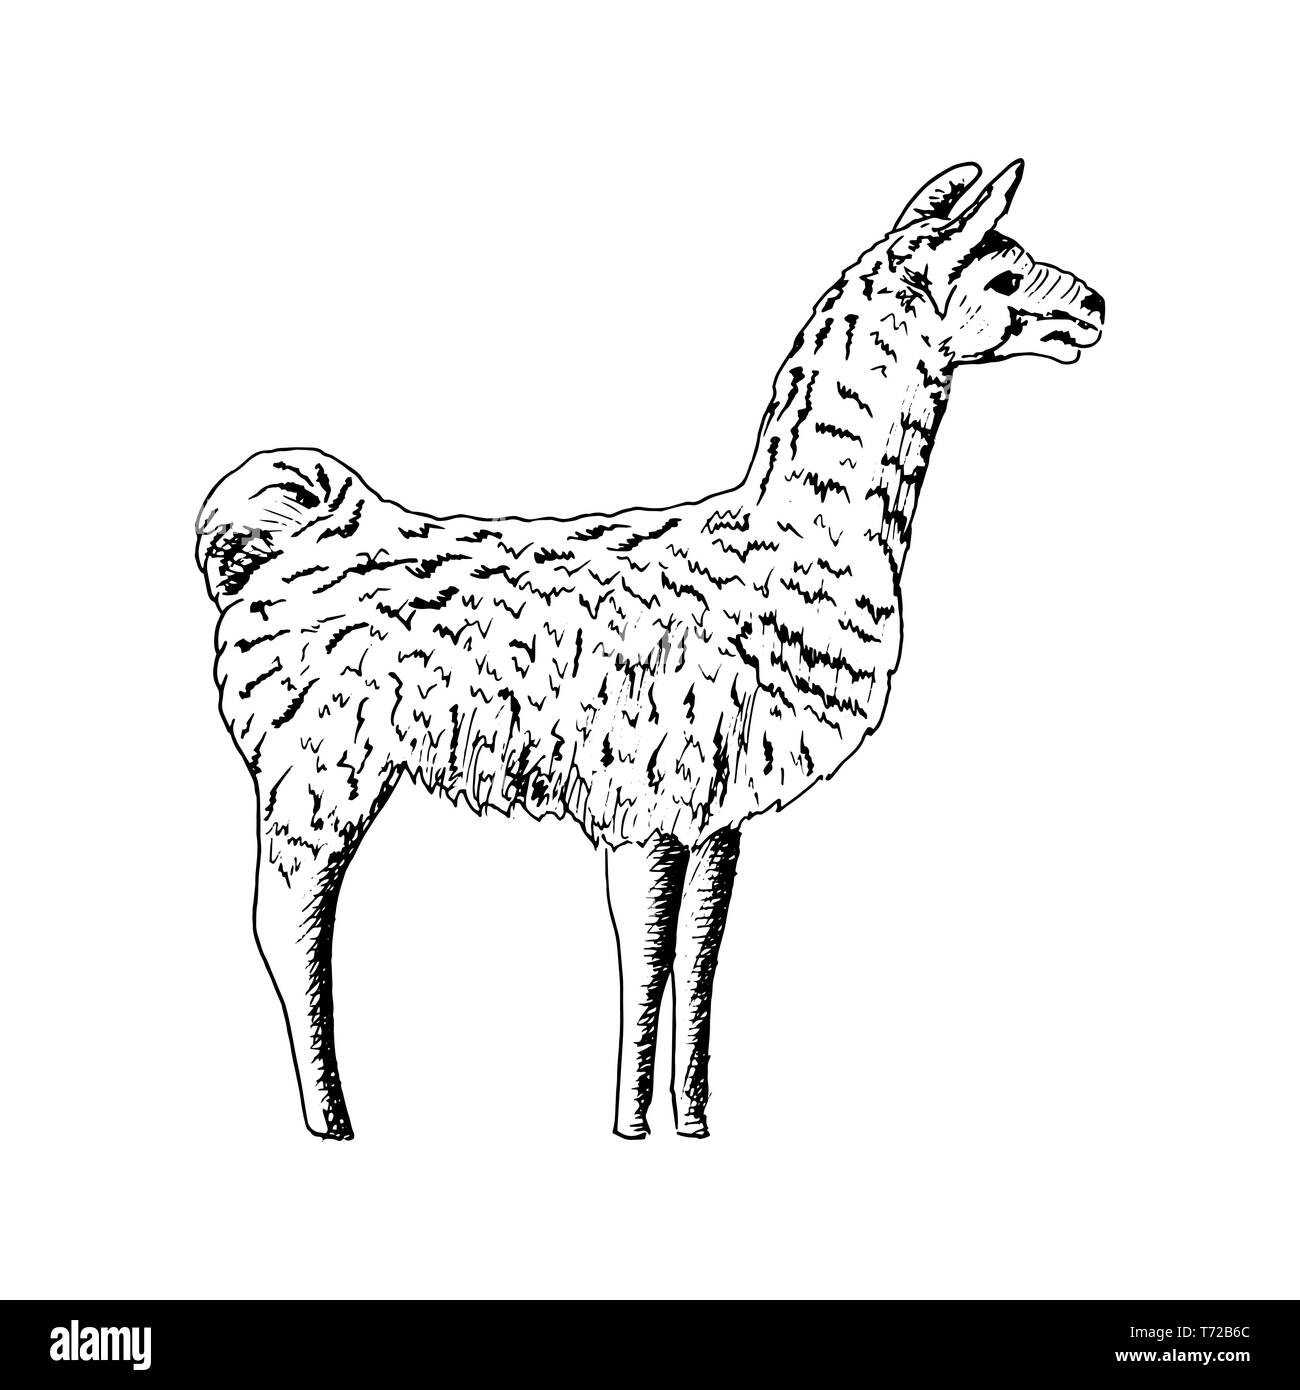 Lama, Cute Kugelschreiber Skizze Alpaka. realistische Lama animl. Ands, Südamerika. einfache Zeichnung, Hand gezeichnet Vector Illustration. Stock Vektor